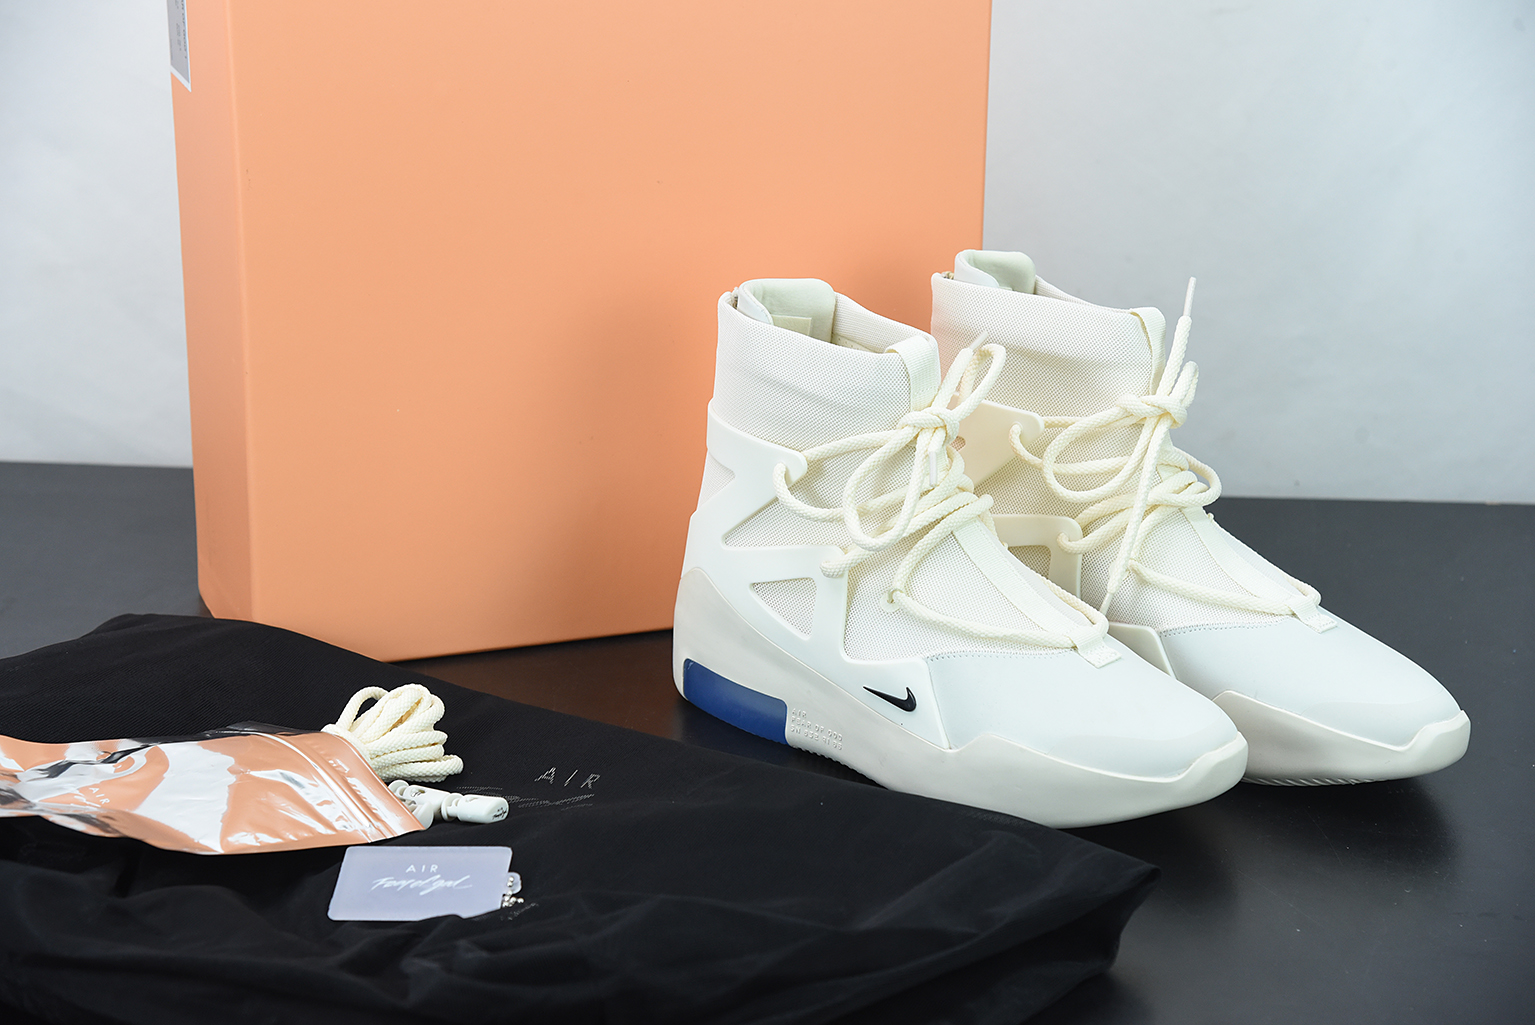 For Sale – Tra-incShops - Nike HyperRev Jordan 4 Tech White White Oreo - Nike HyperRev Fear of God 1 Sail/Black AR4237